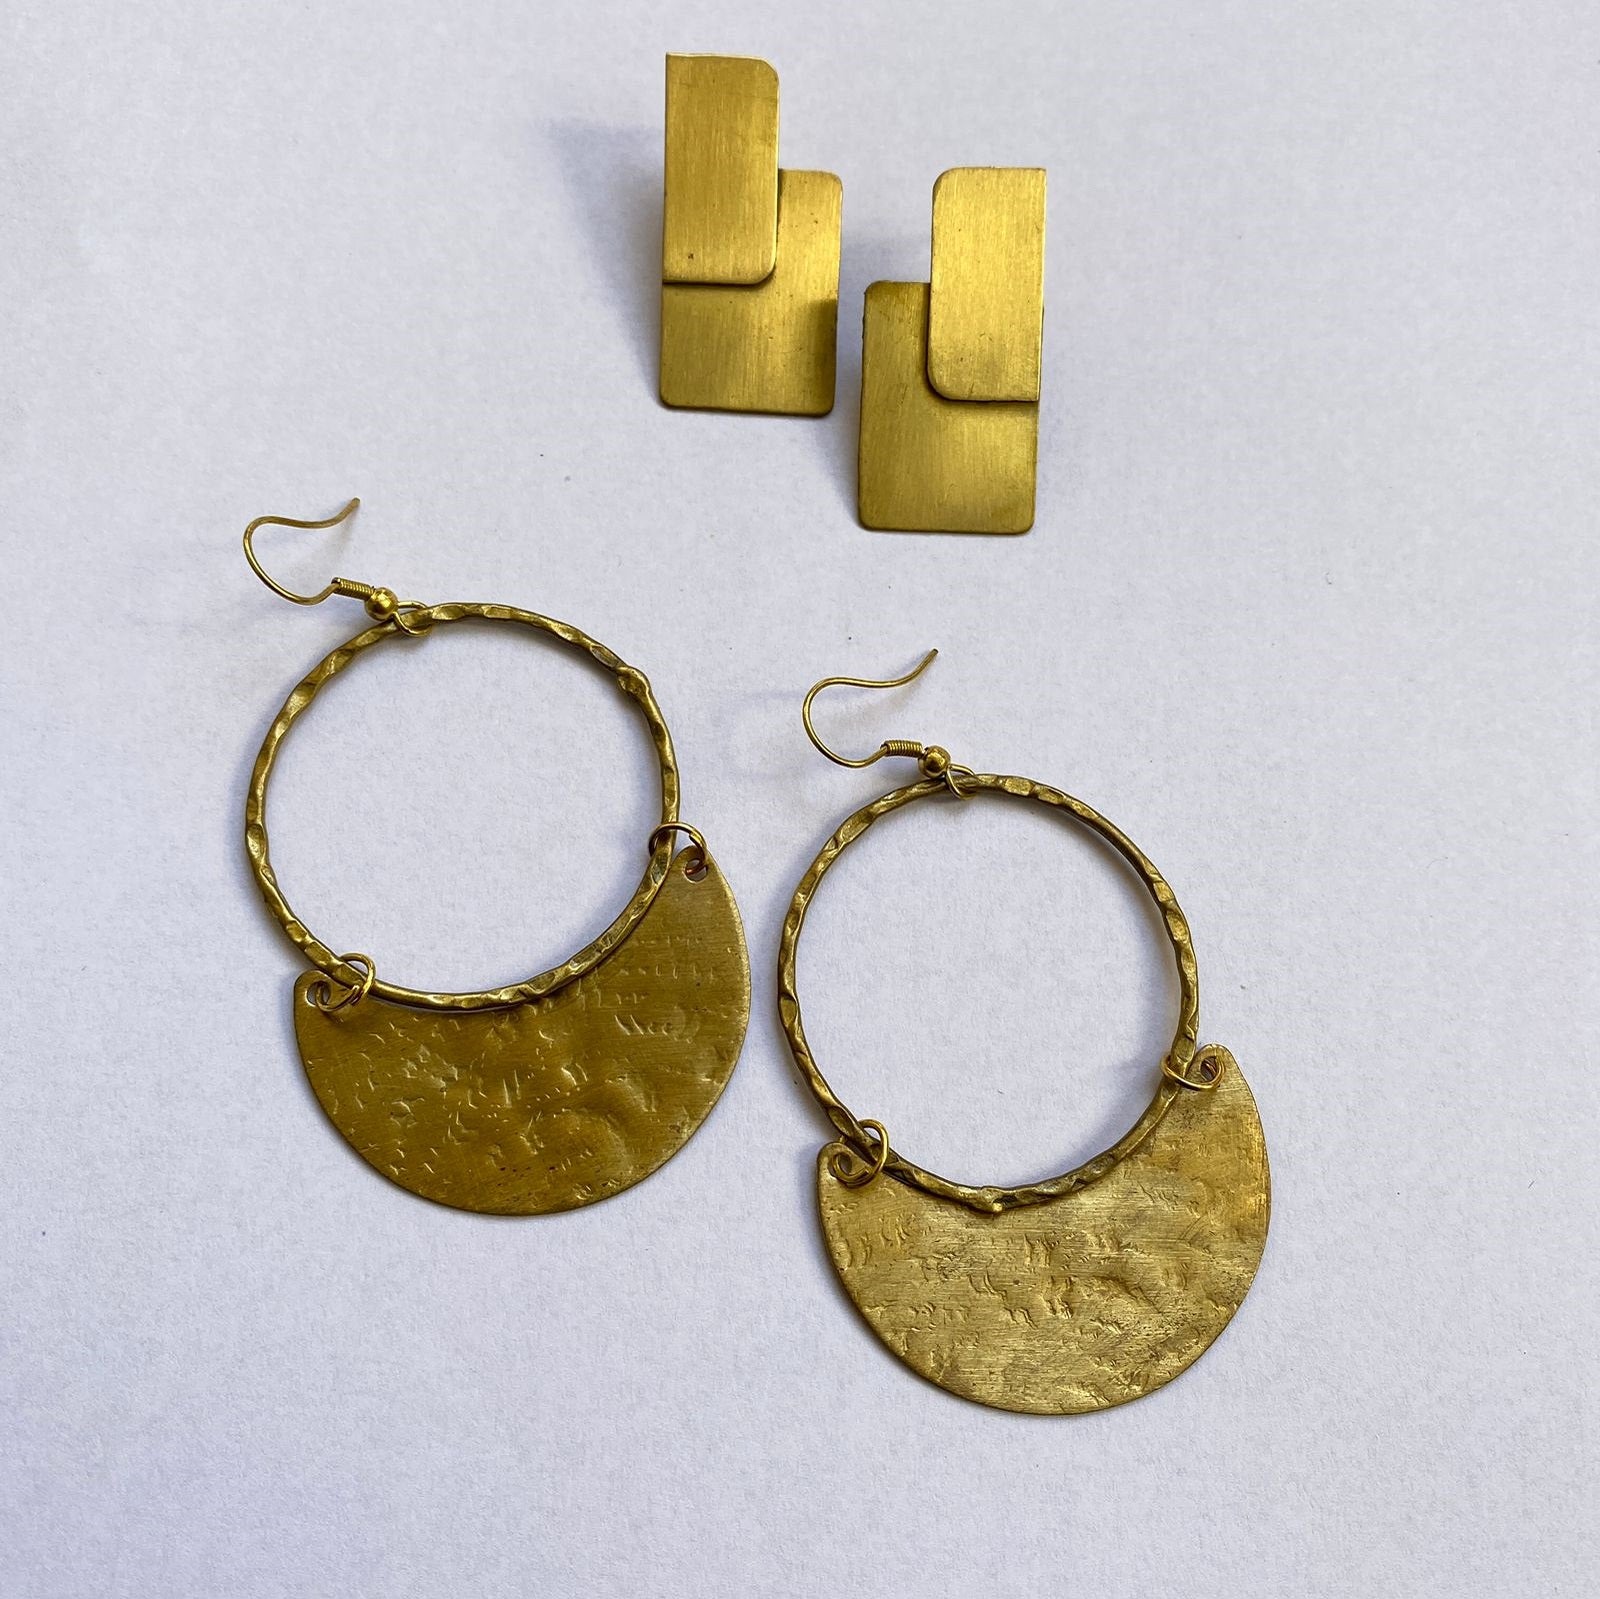 Brass Charm Earring : Two